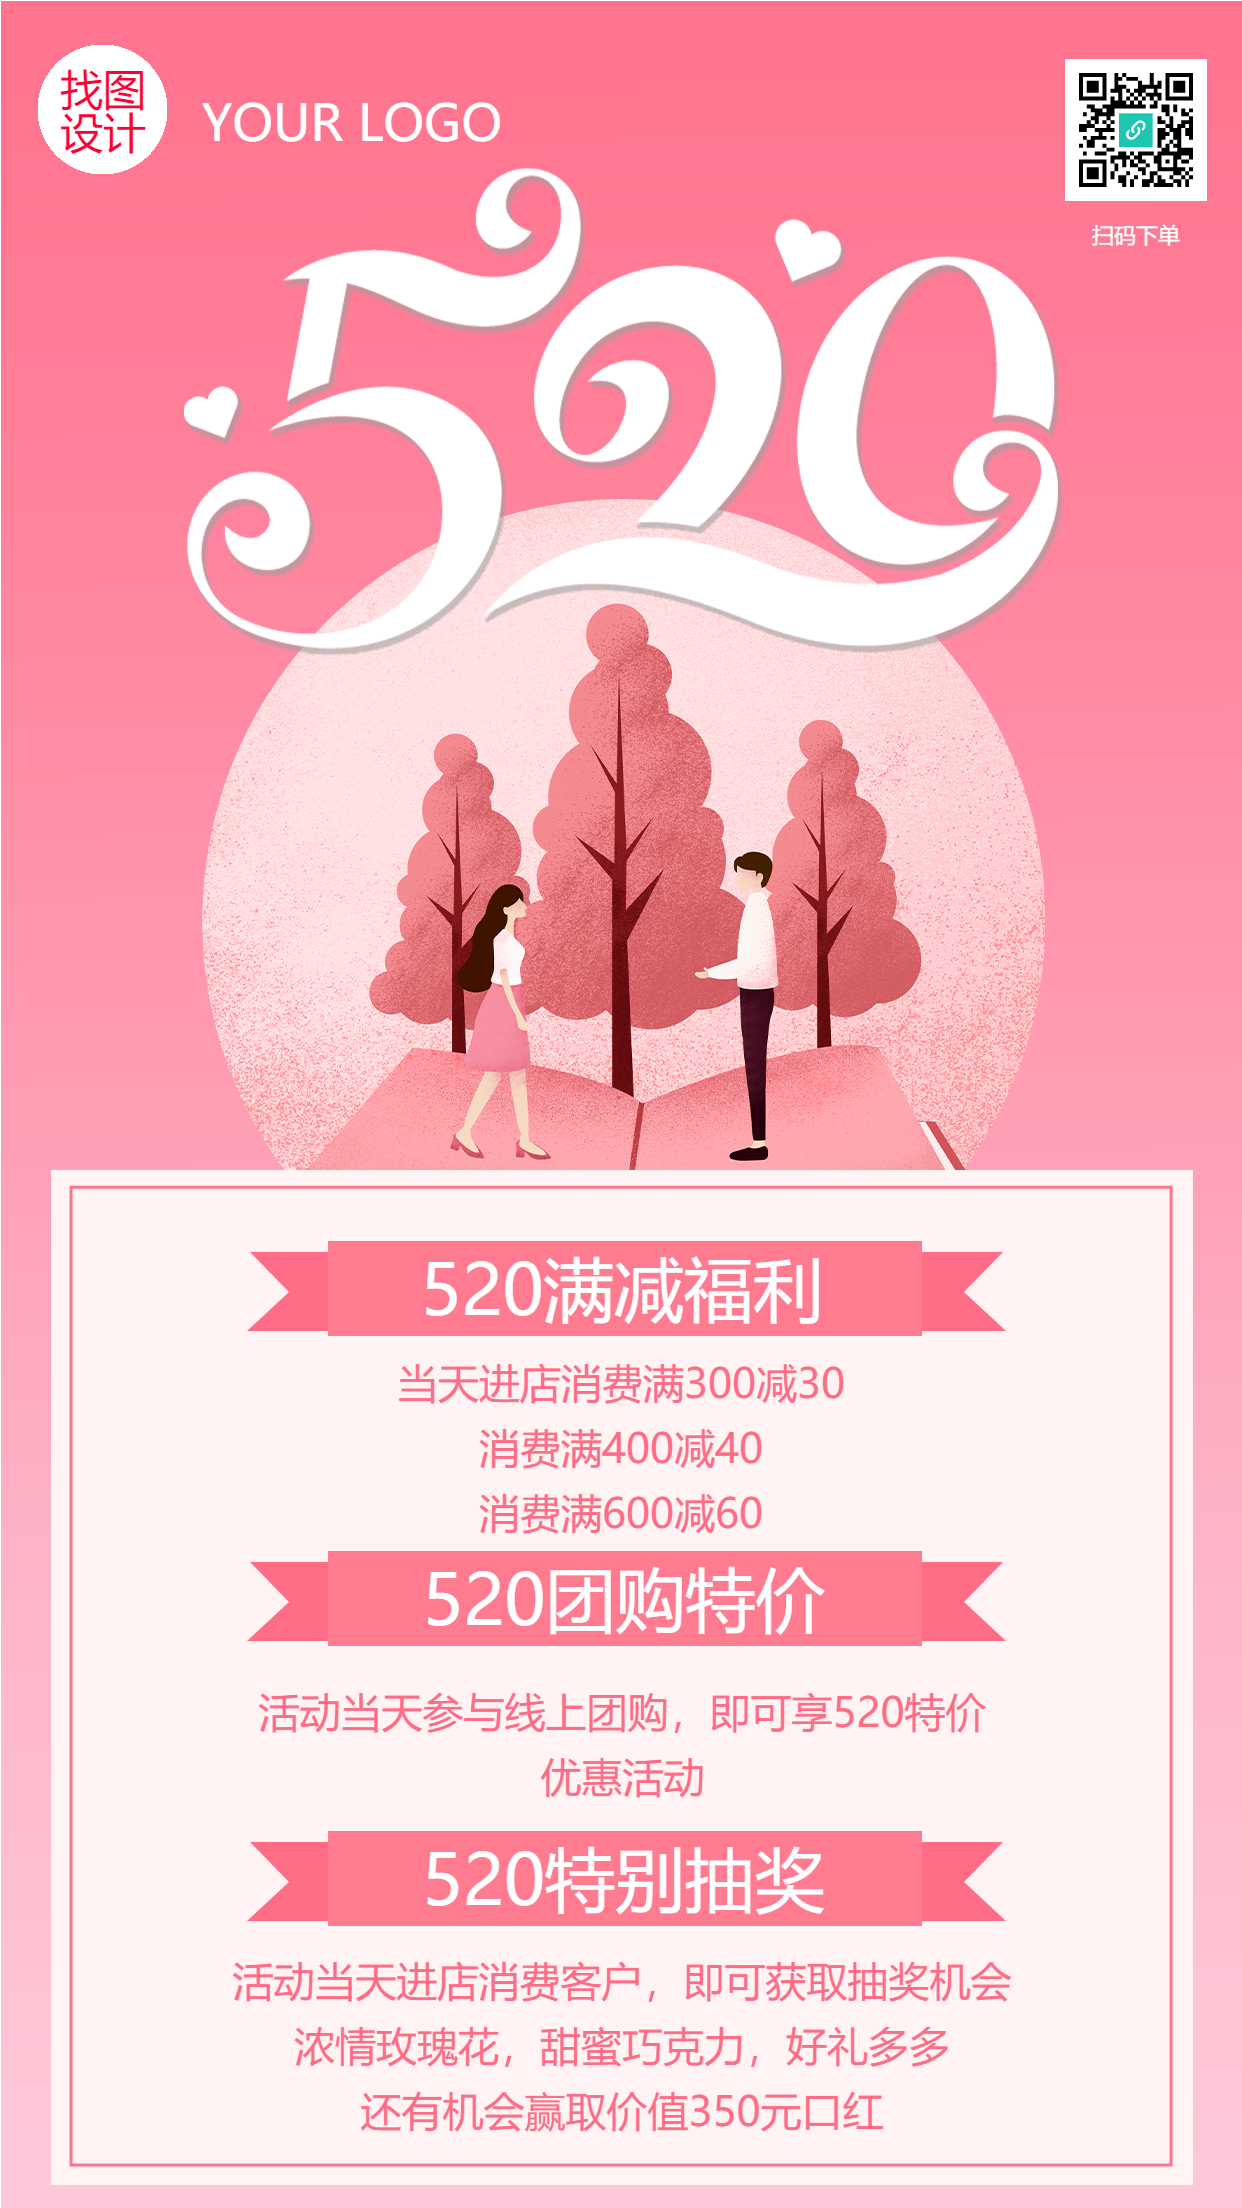 520新品团购特价粉色唯美手机海报